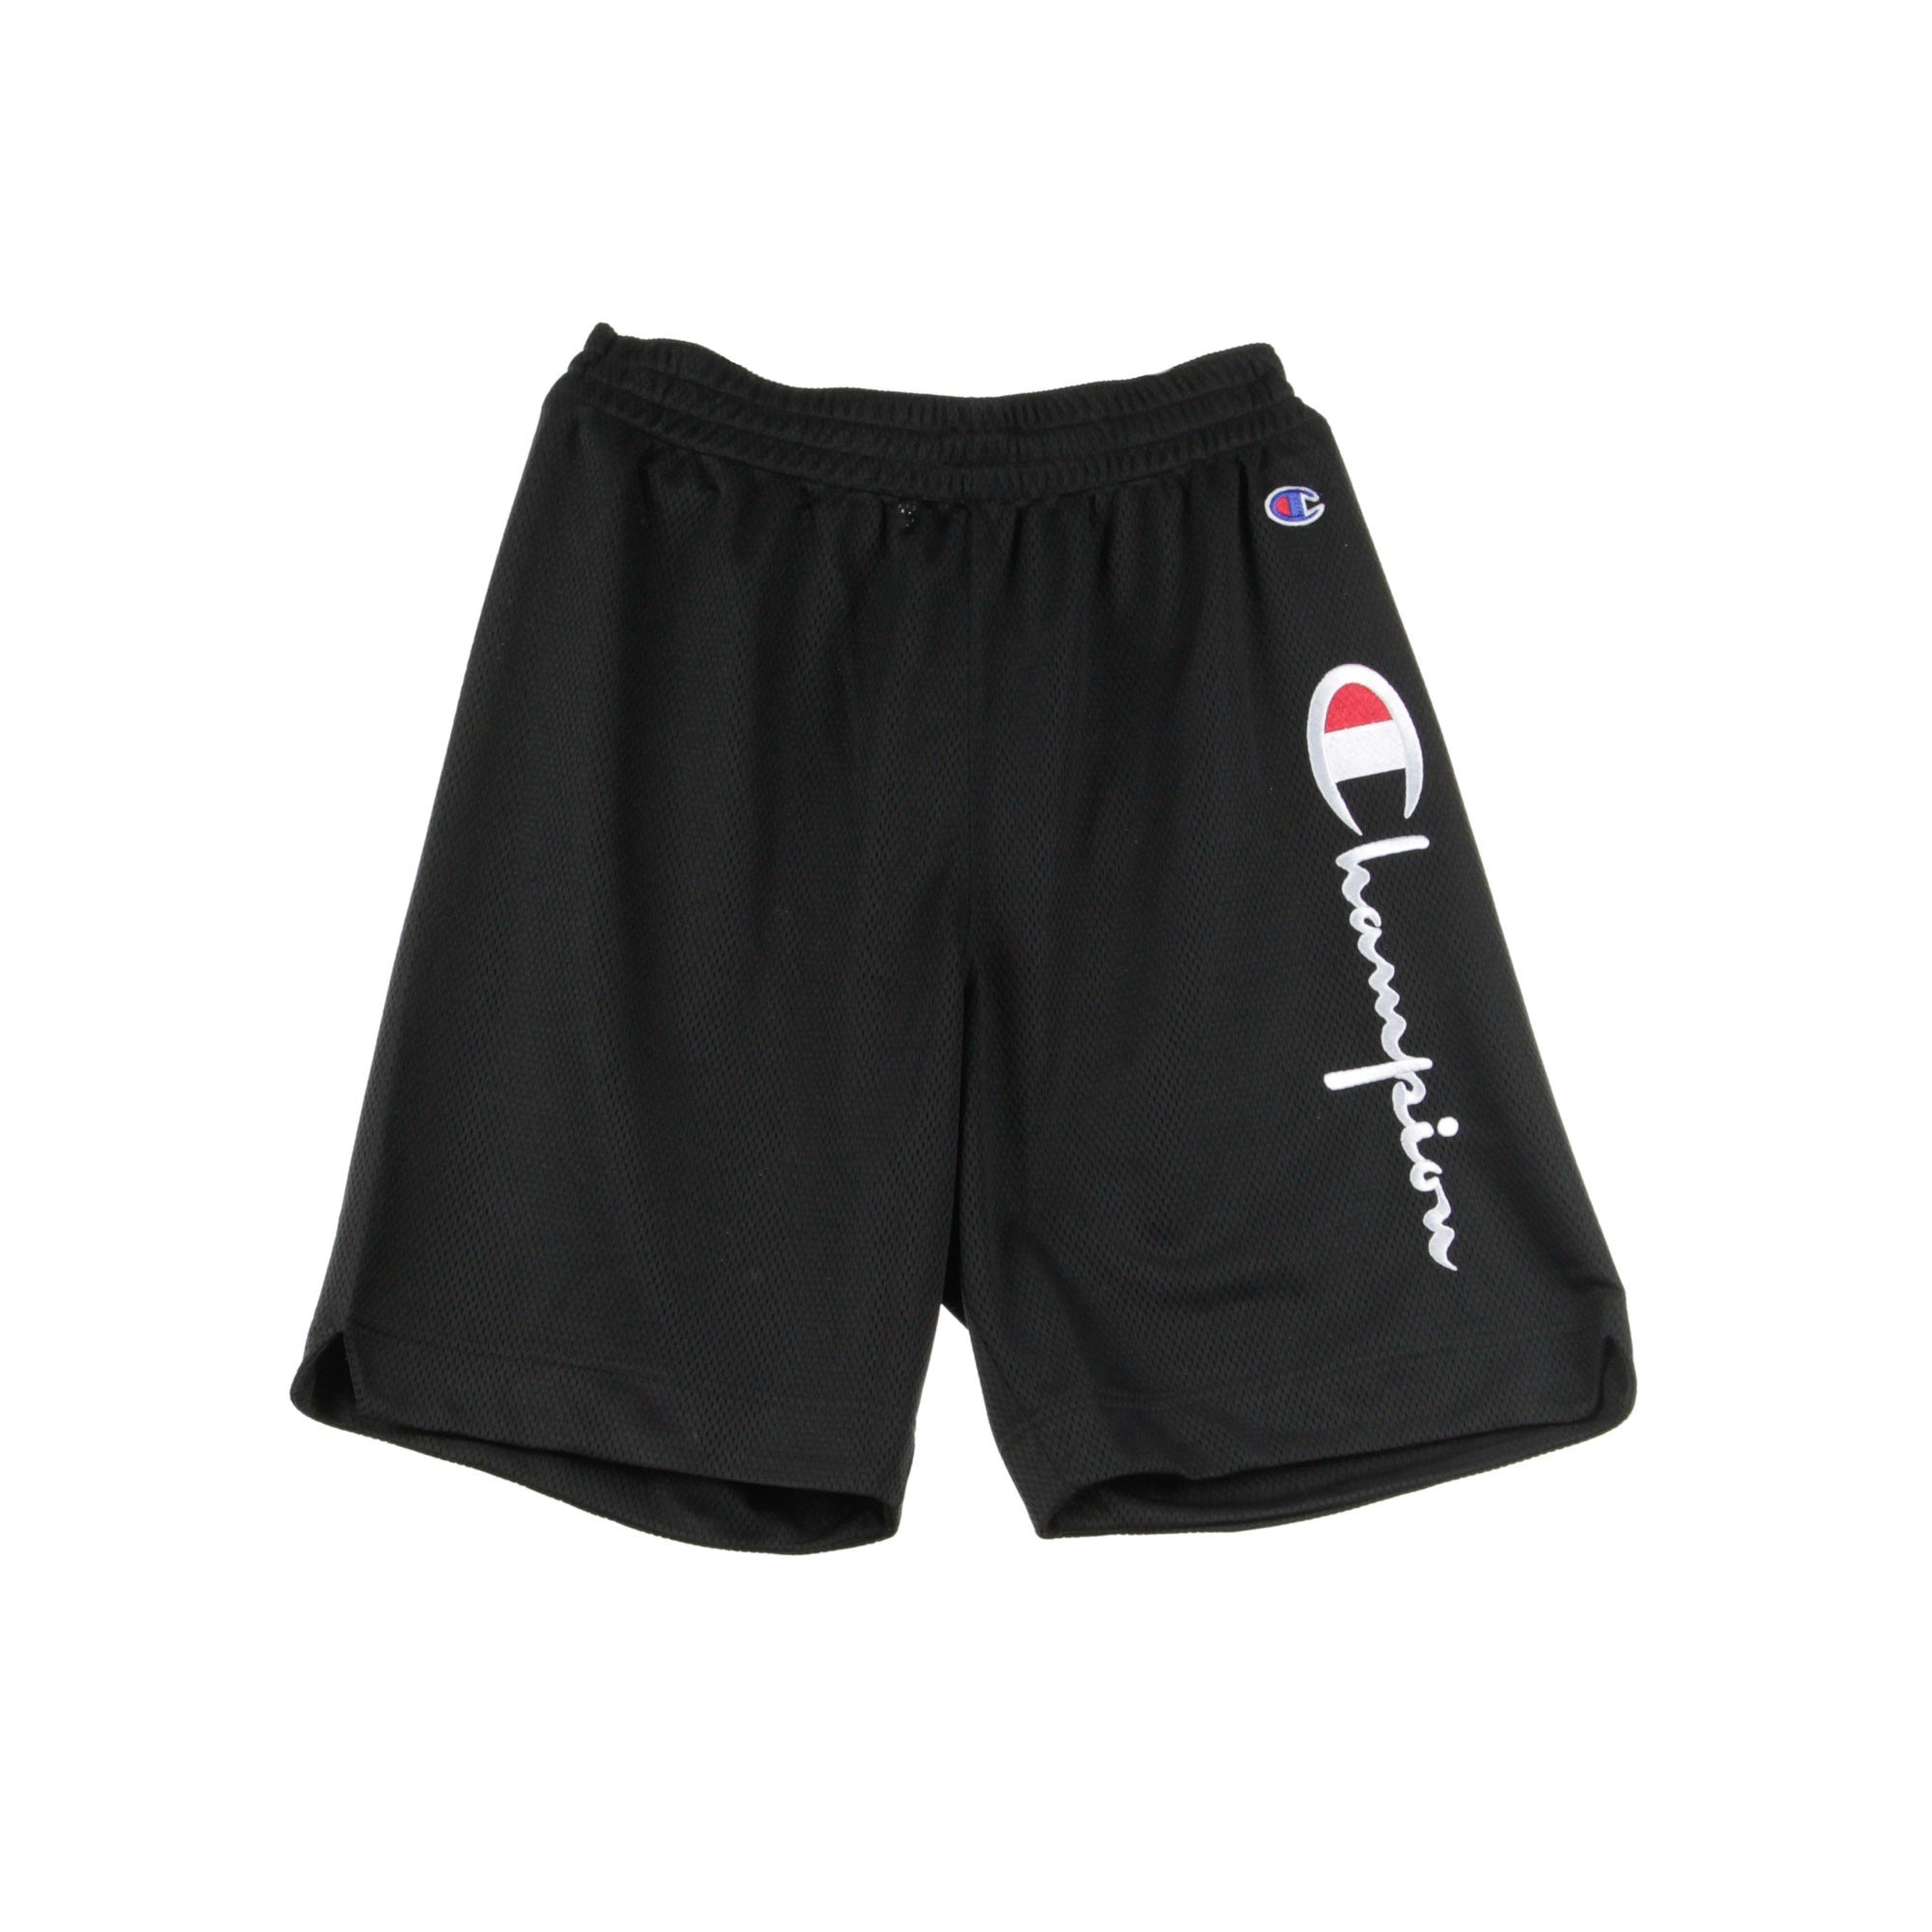 Pantaloncino Tipo Basket Uomo Shorts Black